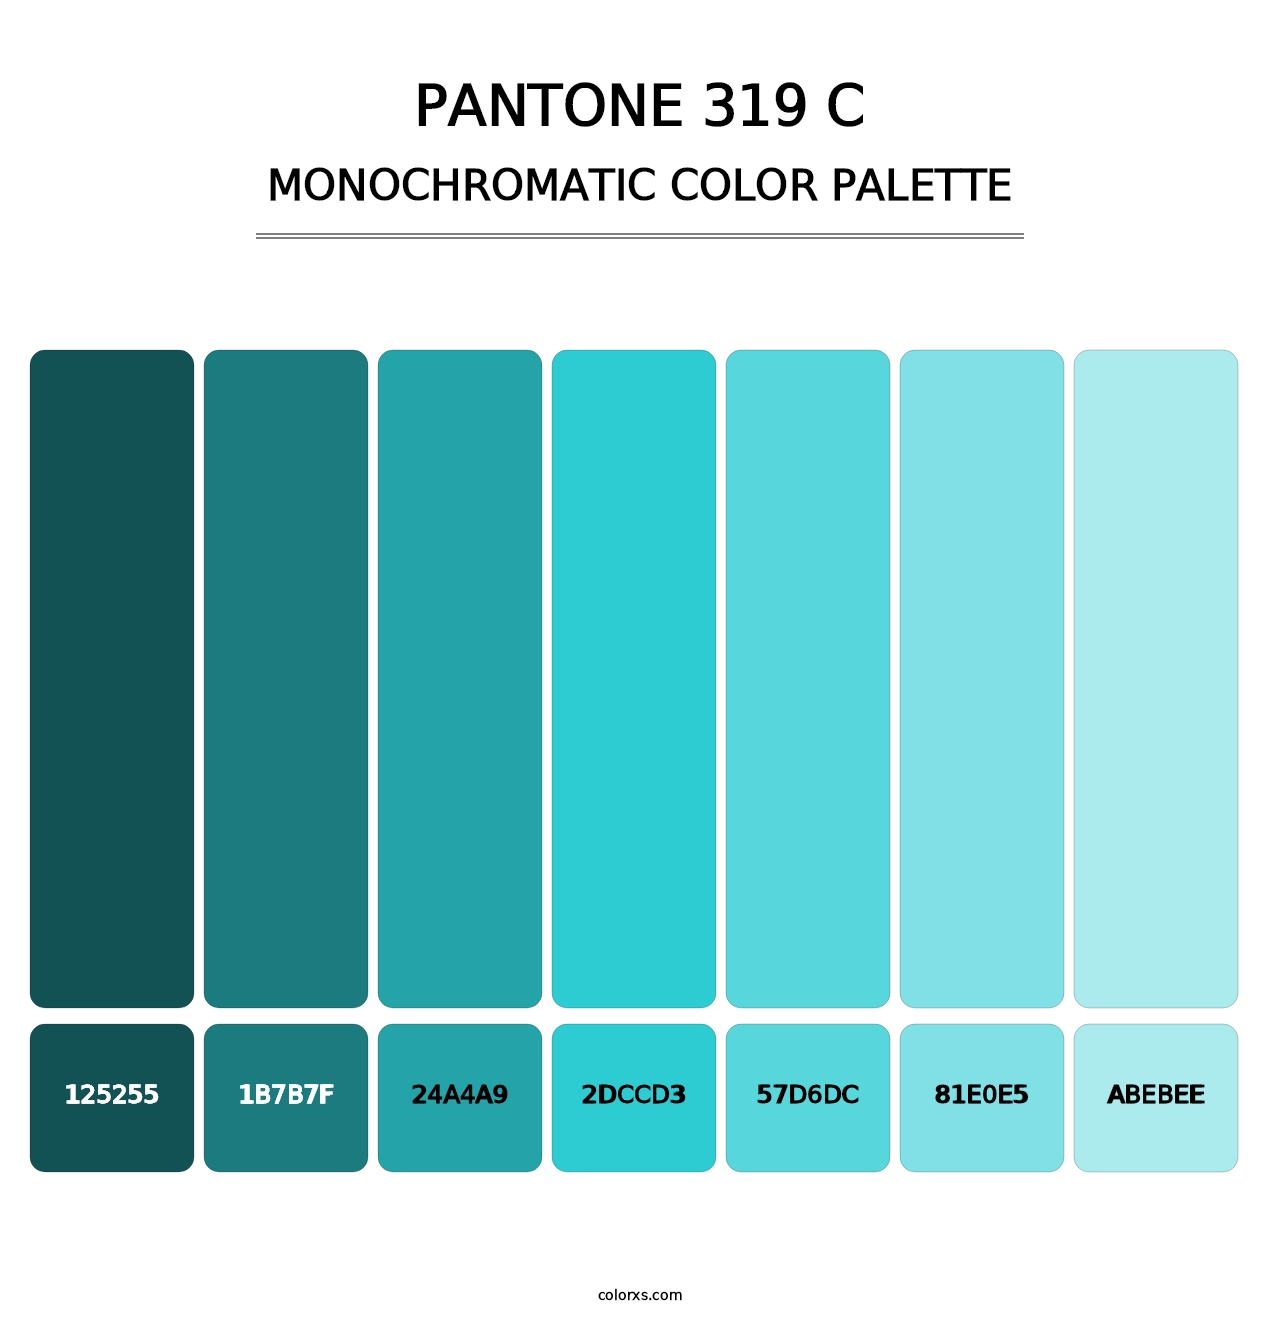 PANTONE 319 C - Monochromatic Color Palette